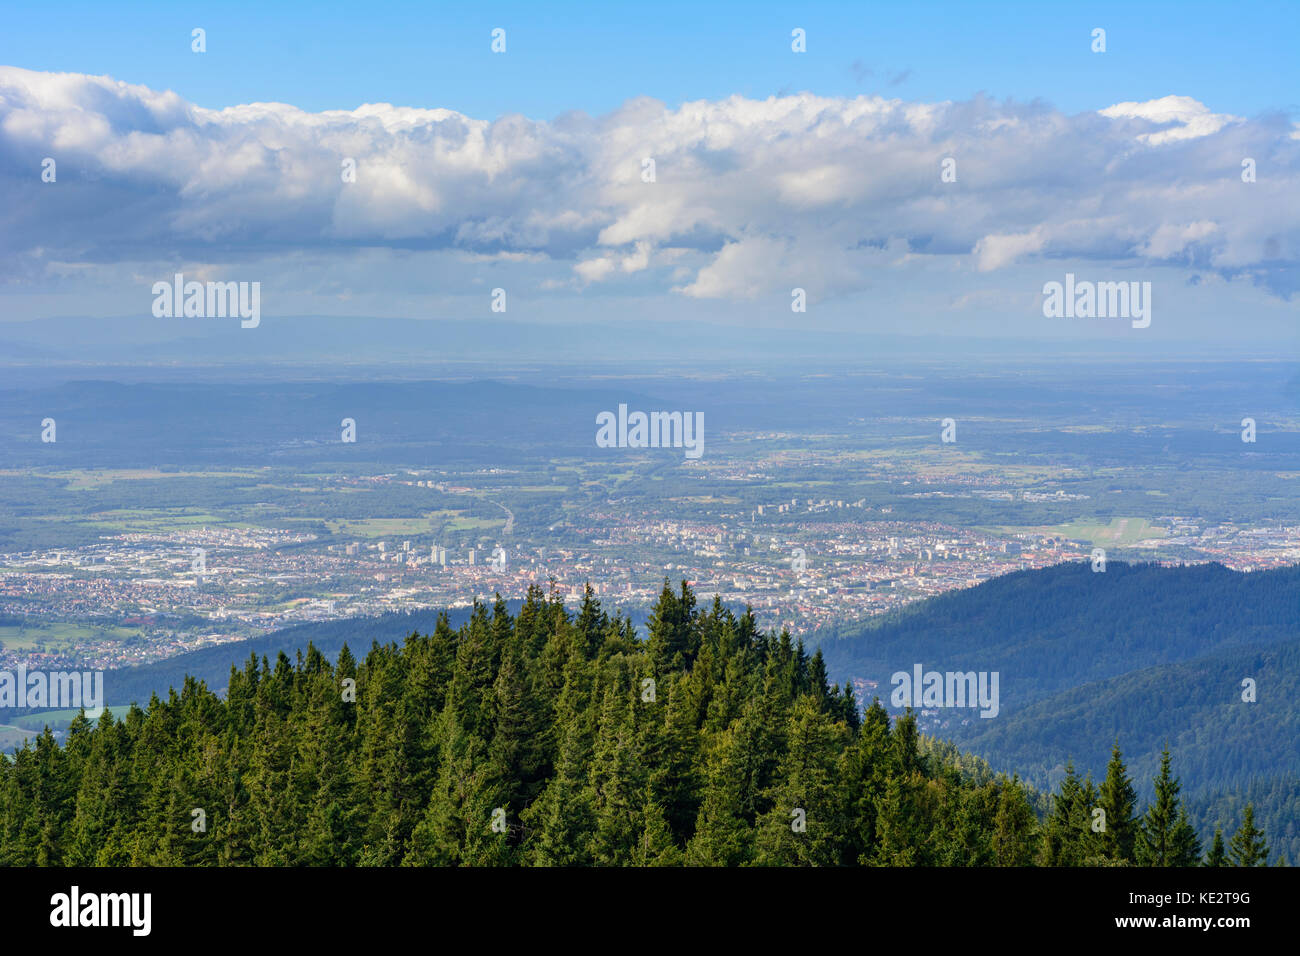 Vista desde la torre de observación Eugen-Keidel-Turm en montaña Schauinsland a Freiburg, Freiburg im Breisgau, Schwarzwald, la Selva Negra, en el Estado federado de Baden-Württemberg Foto de stock